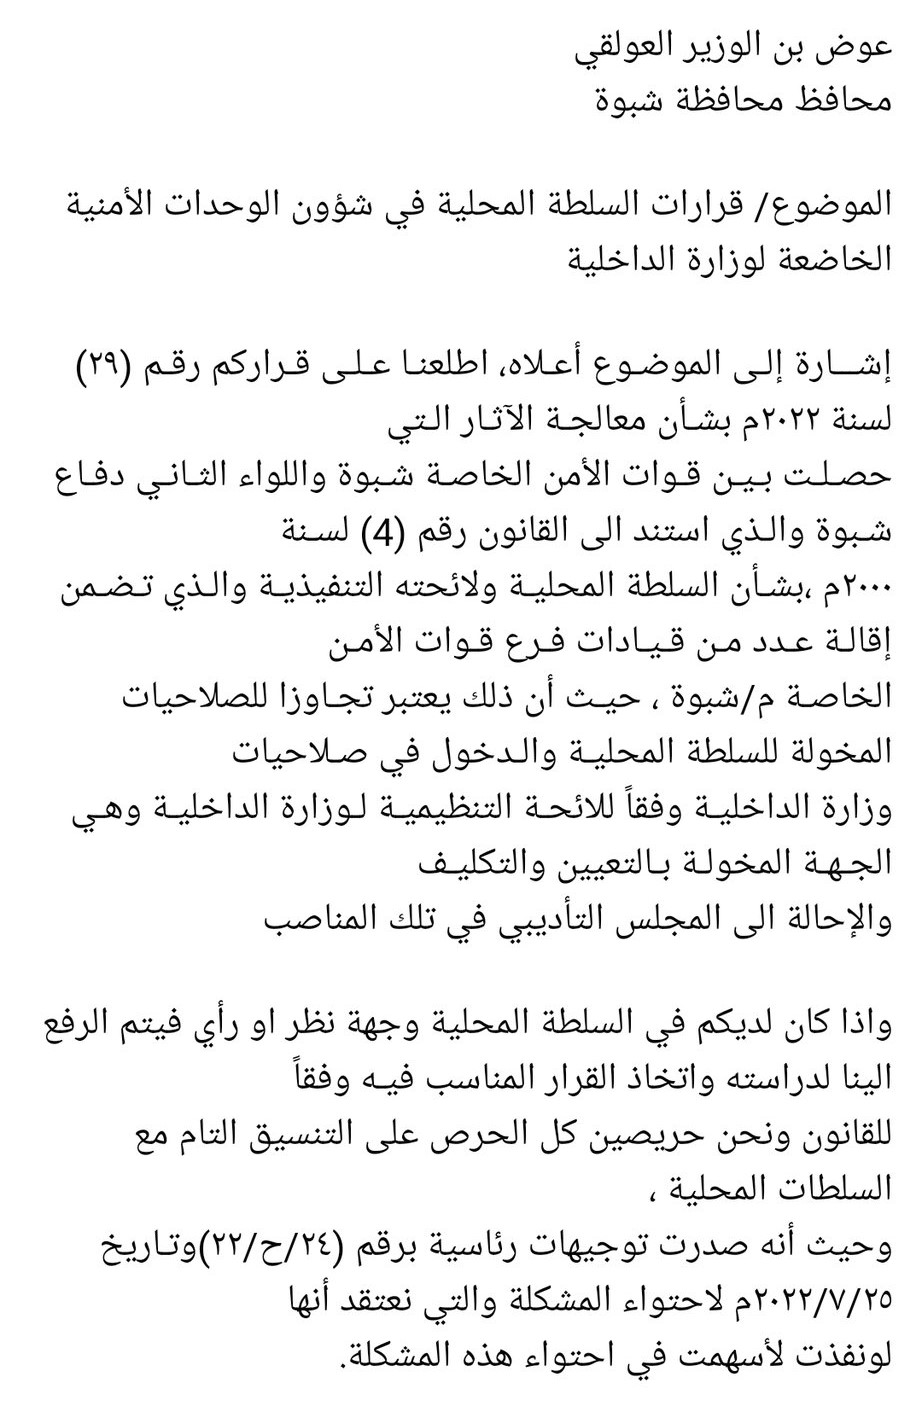 مذكرة وزير الداخلية لعوض بن الوزير